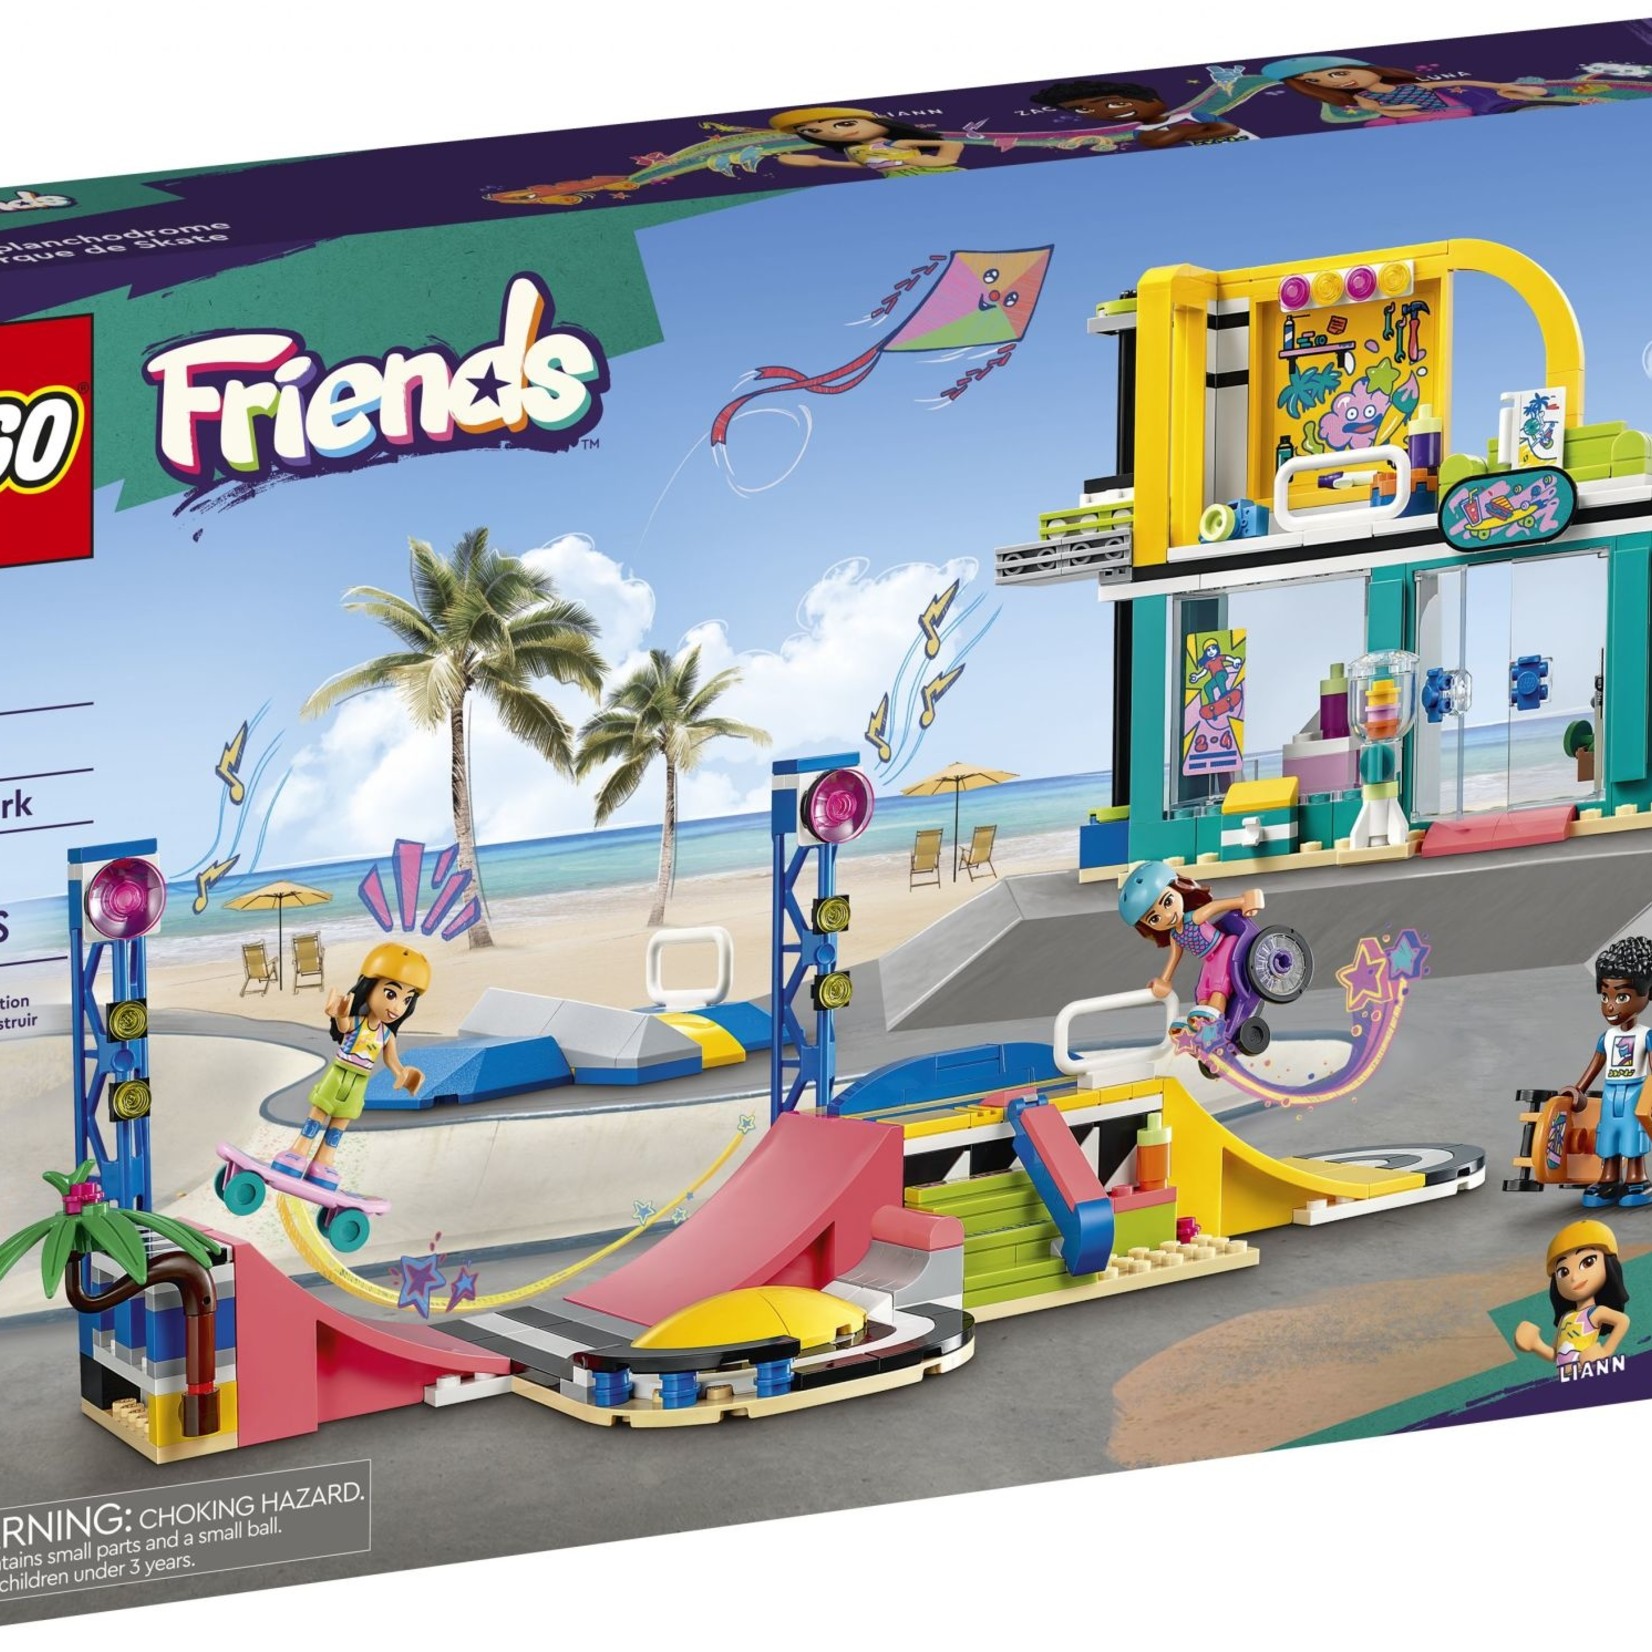 Lego Lego 41751 Friends - Le planchedrome